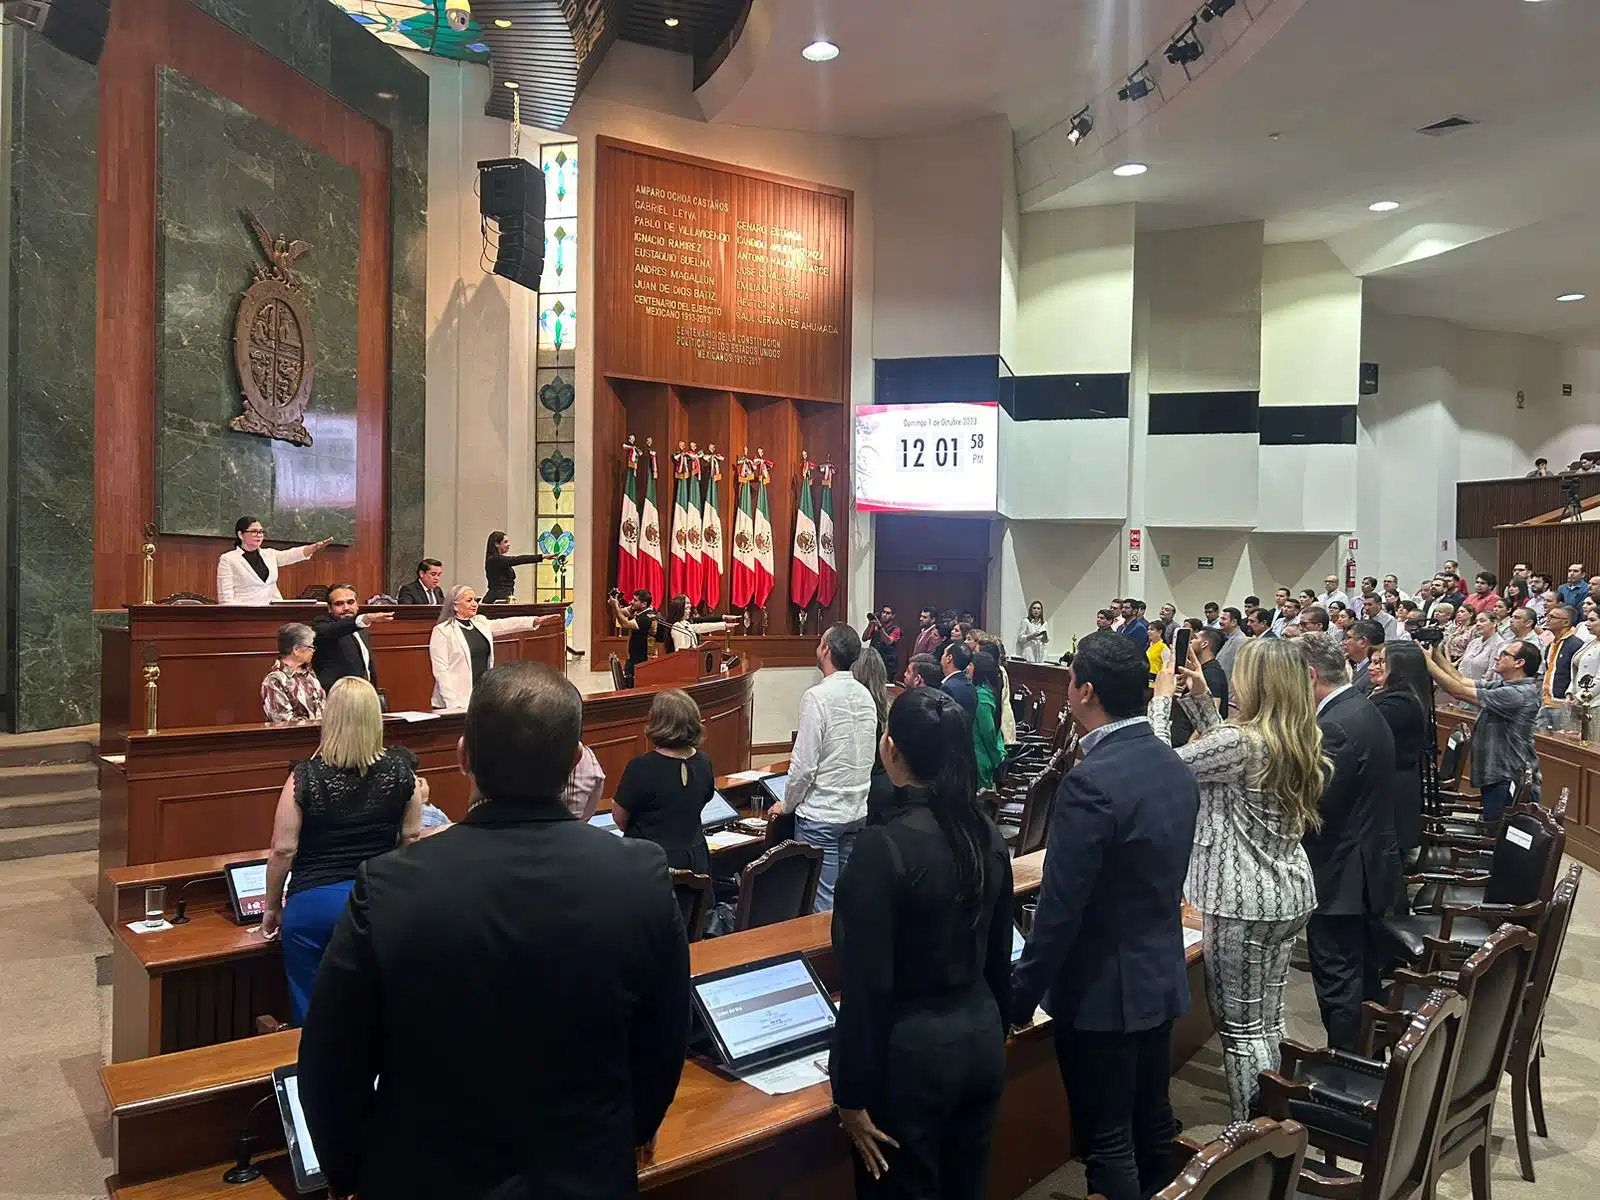 Personas de pie, algunas con la mano levantada en forma de tomando protesta y banderas de México